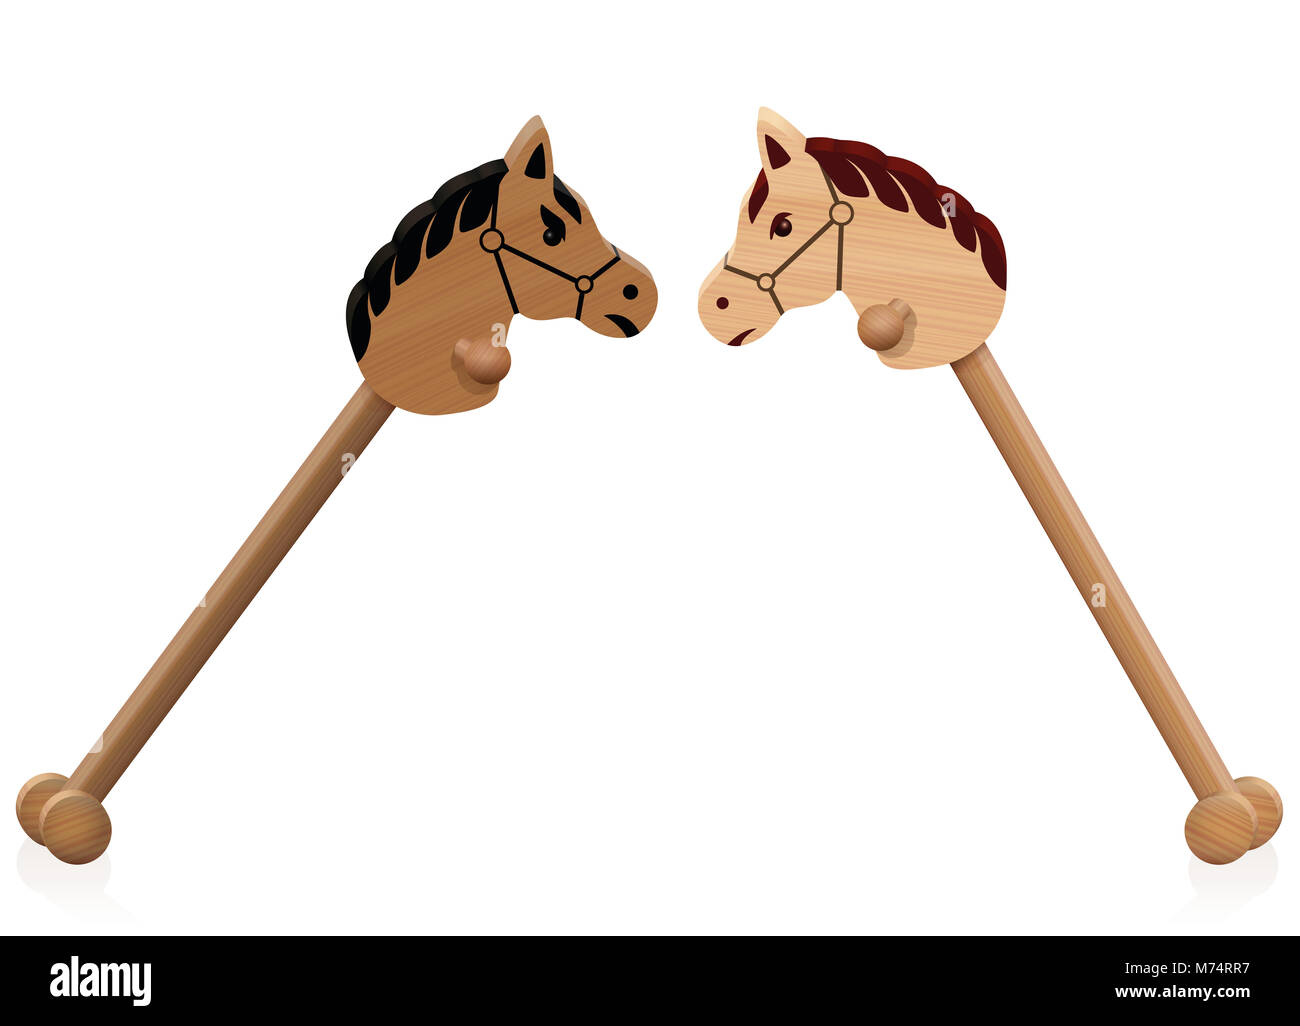 Hobby Horse kämpfen. Symbol für Problem Kinder-, Bildungs- Konfliktmanagement, soziale Interaktion oder aggressives kindliches Verhalten. Stockfoto